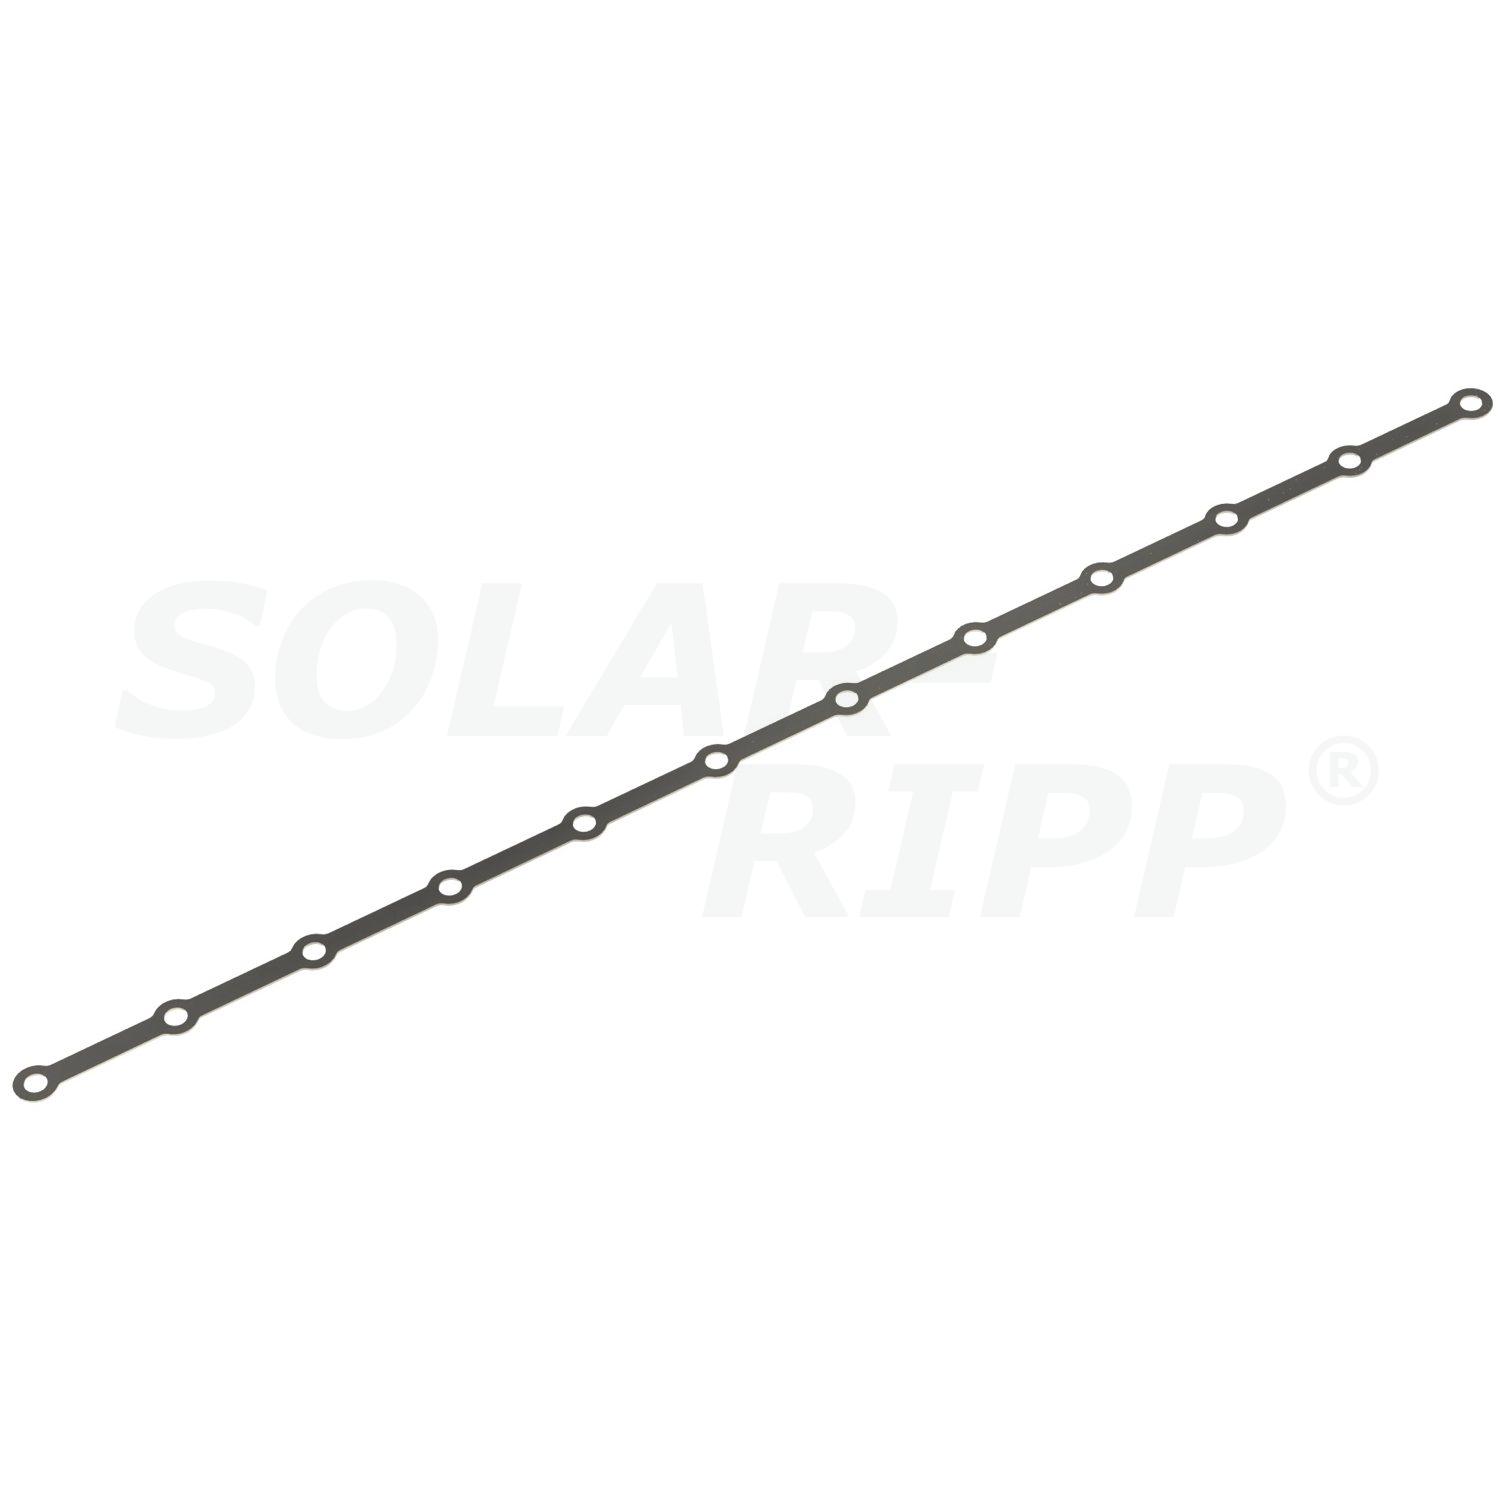 Tiras perfuradas para fixação do distribuidor/coletor SOLAR-RIPP ®